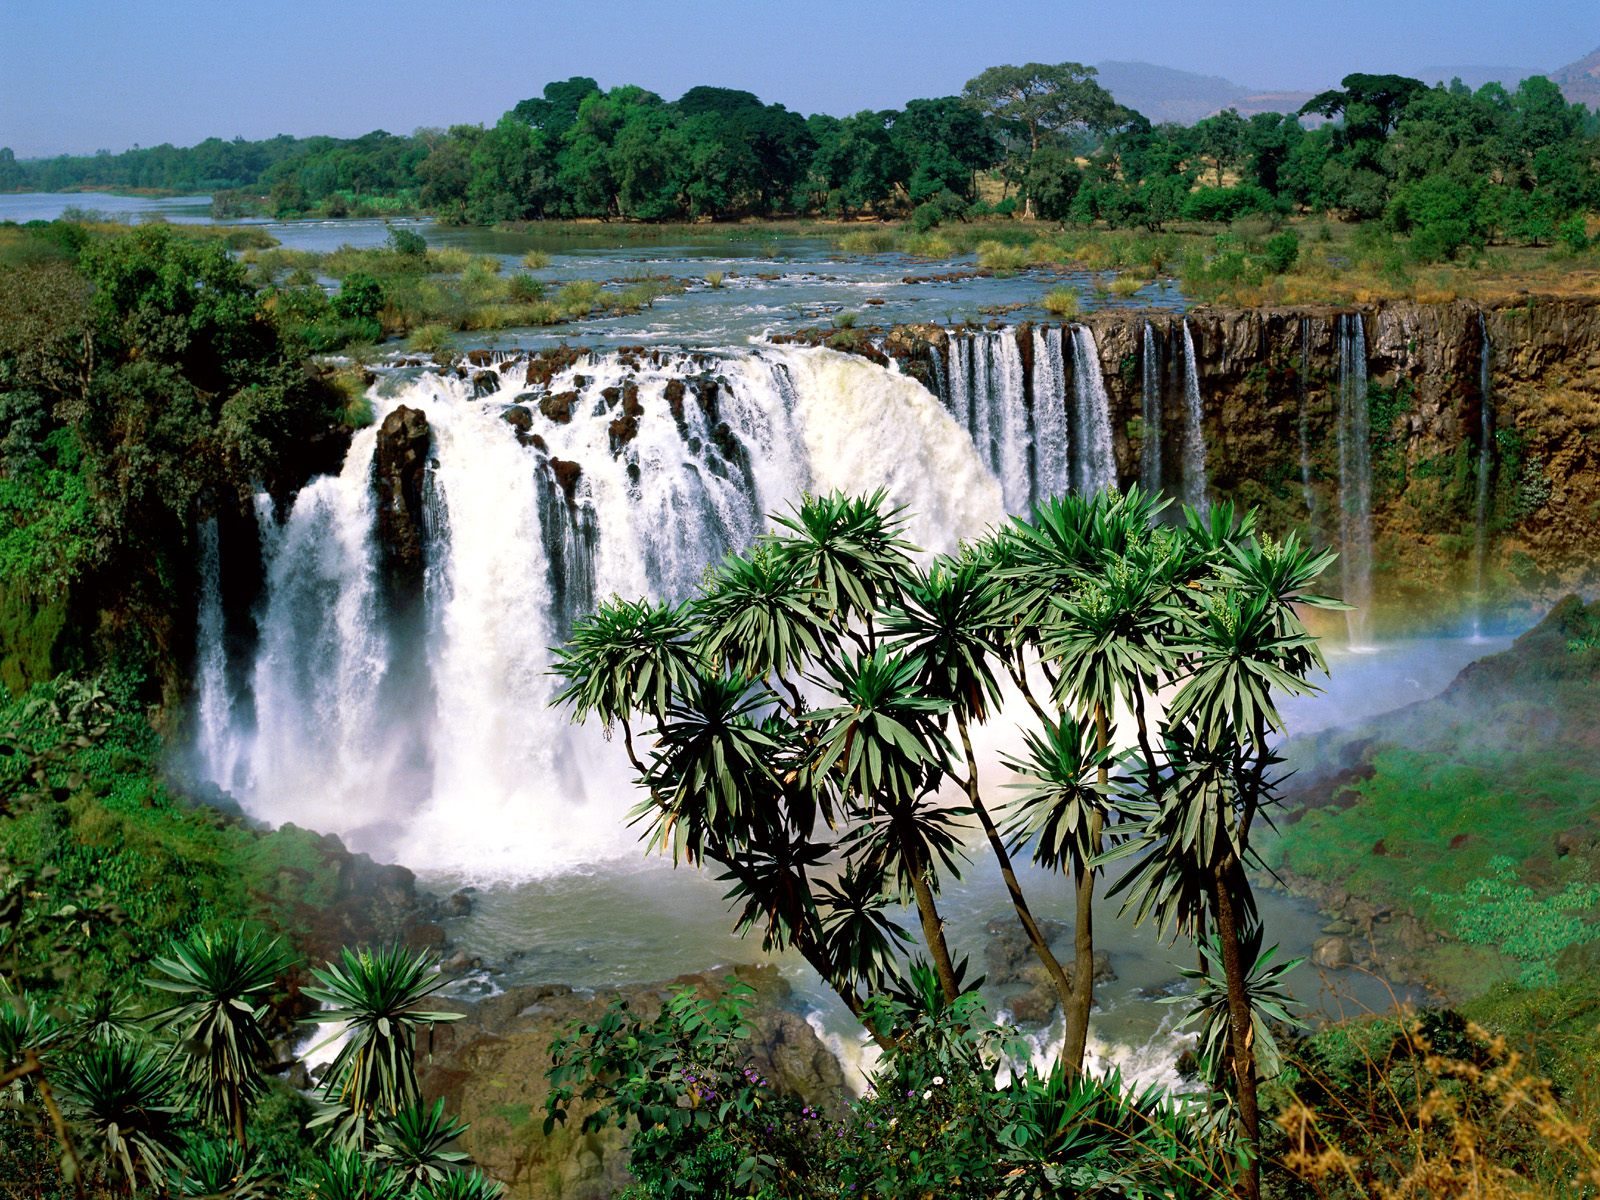 ethiopian tourism places